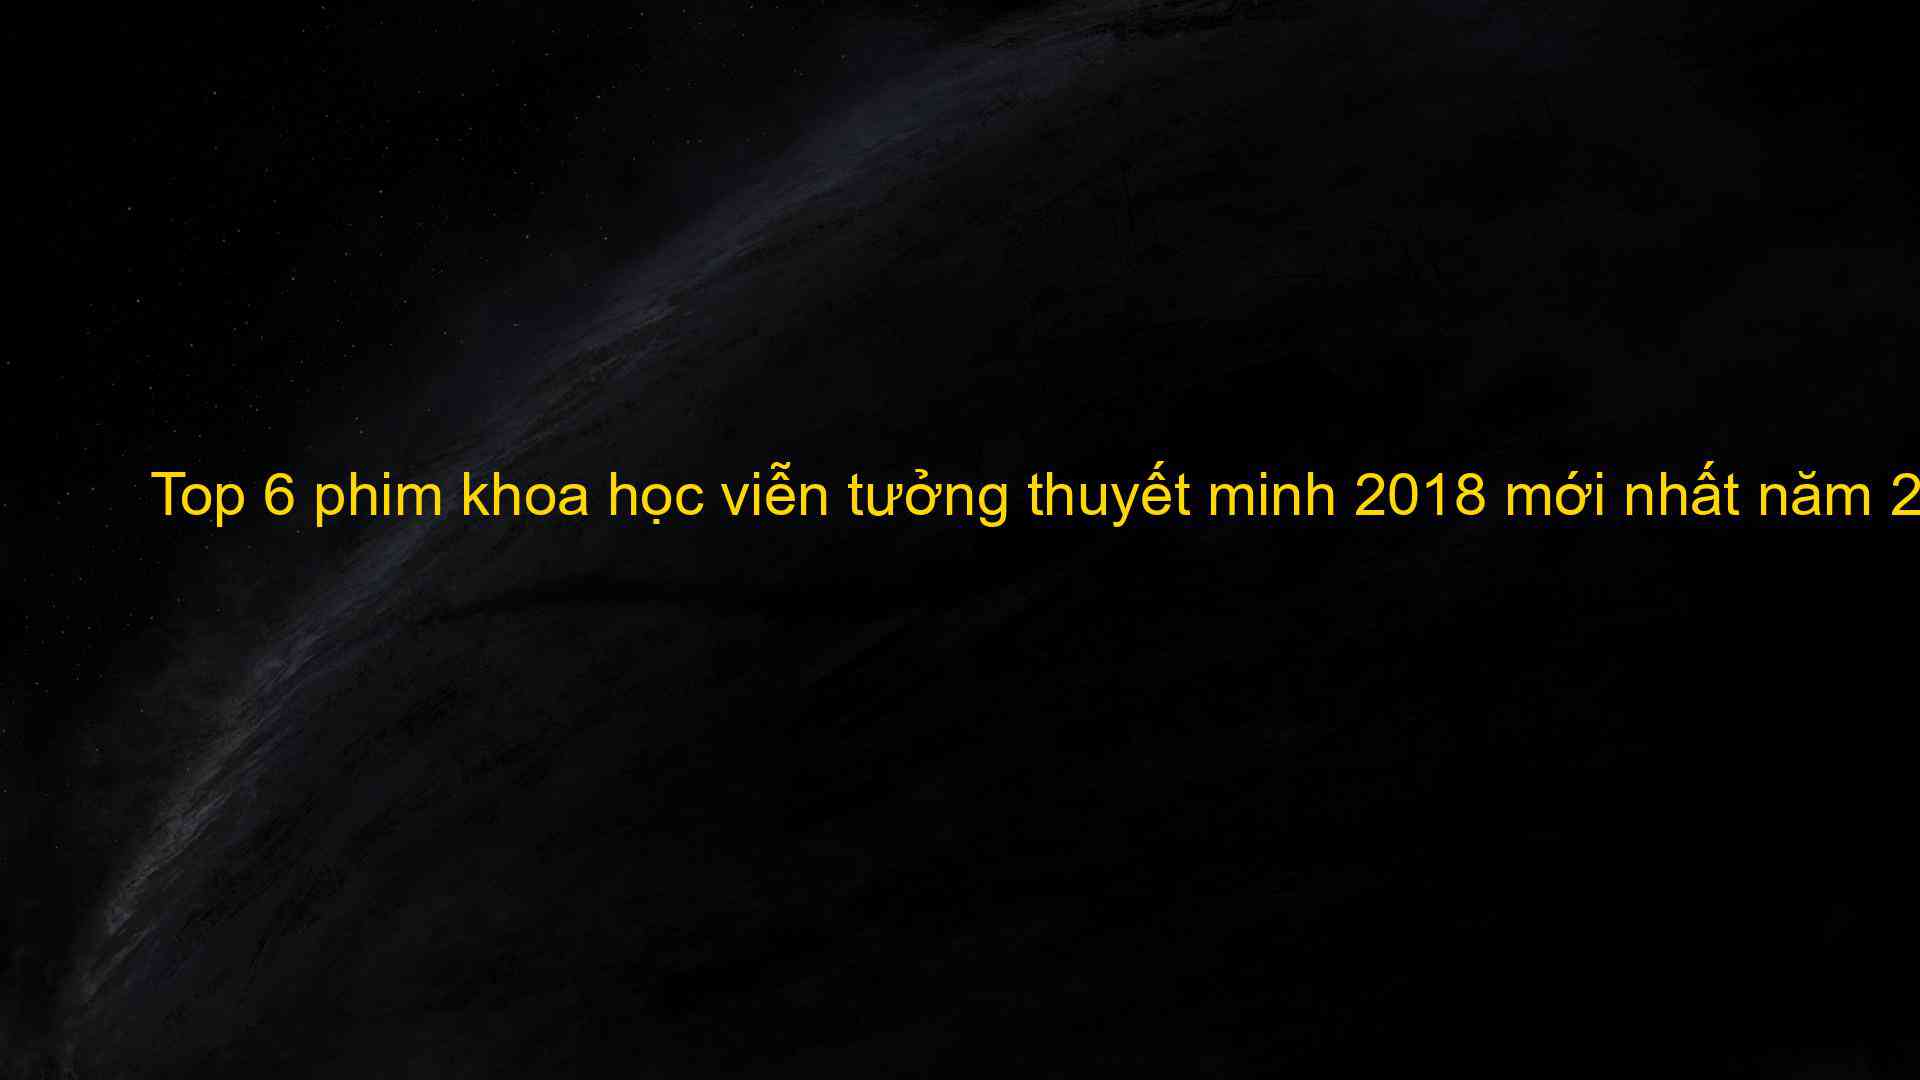 Top 6 phim khoa học viễn tưởng thuyết minh 2018 mới nhất năm 2023 - Kiến Thức Cho Người lao Động Việt Nam